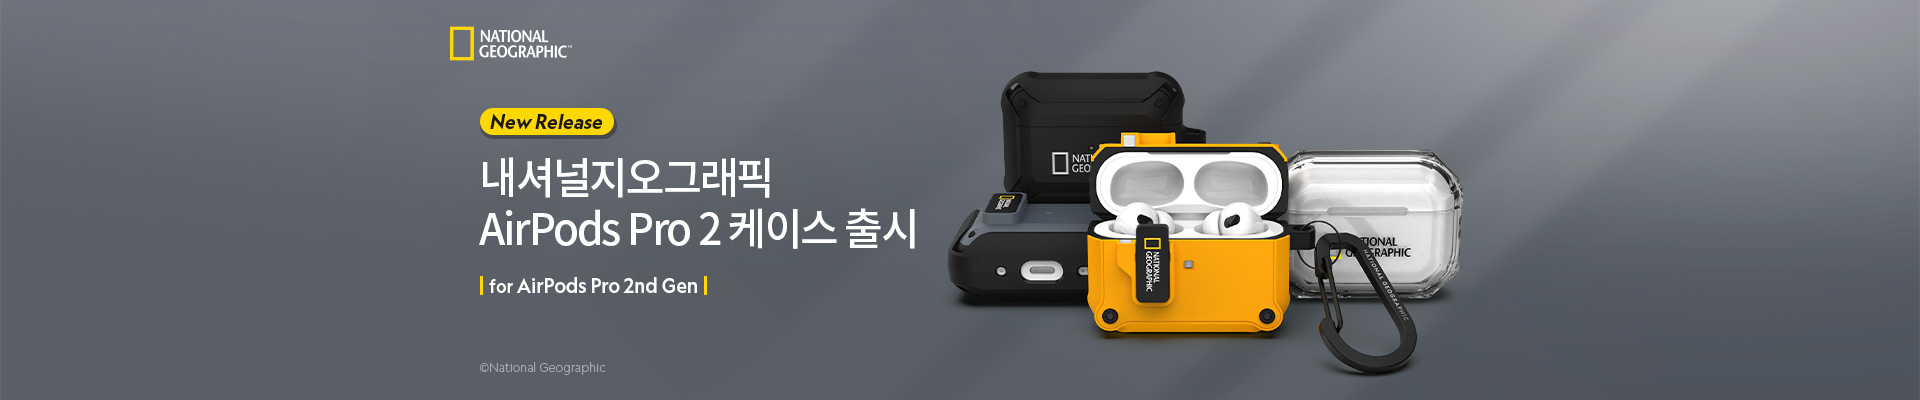  | TOUCH-KR 韓國手機殼.手機配件代購 - 官方網站